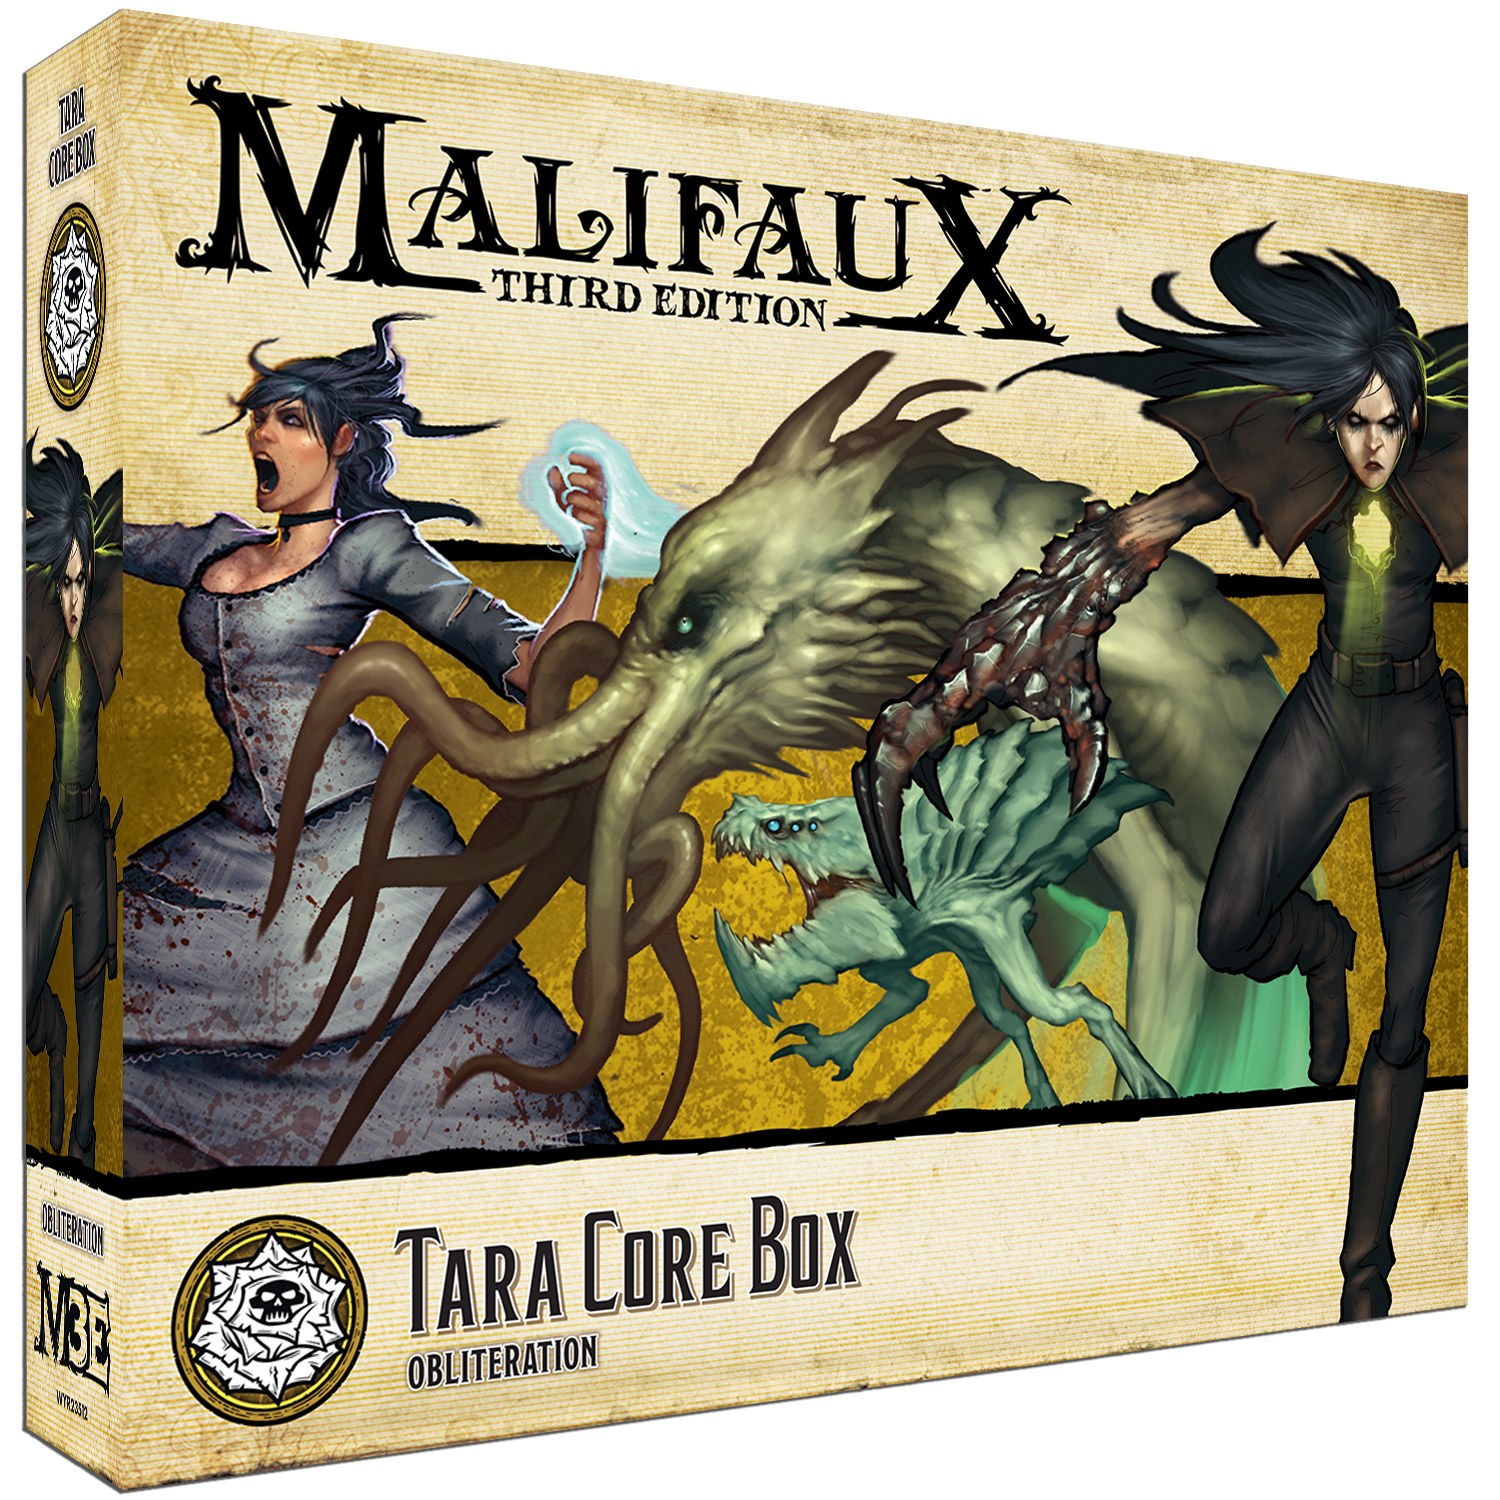 Tara Core Box Malifaux Wyrd Miniatures   